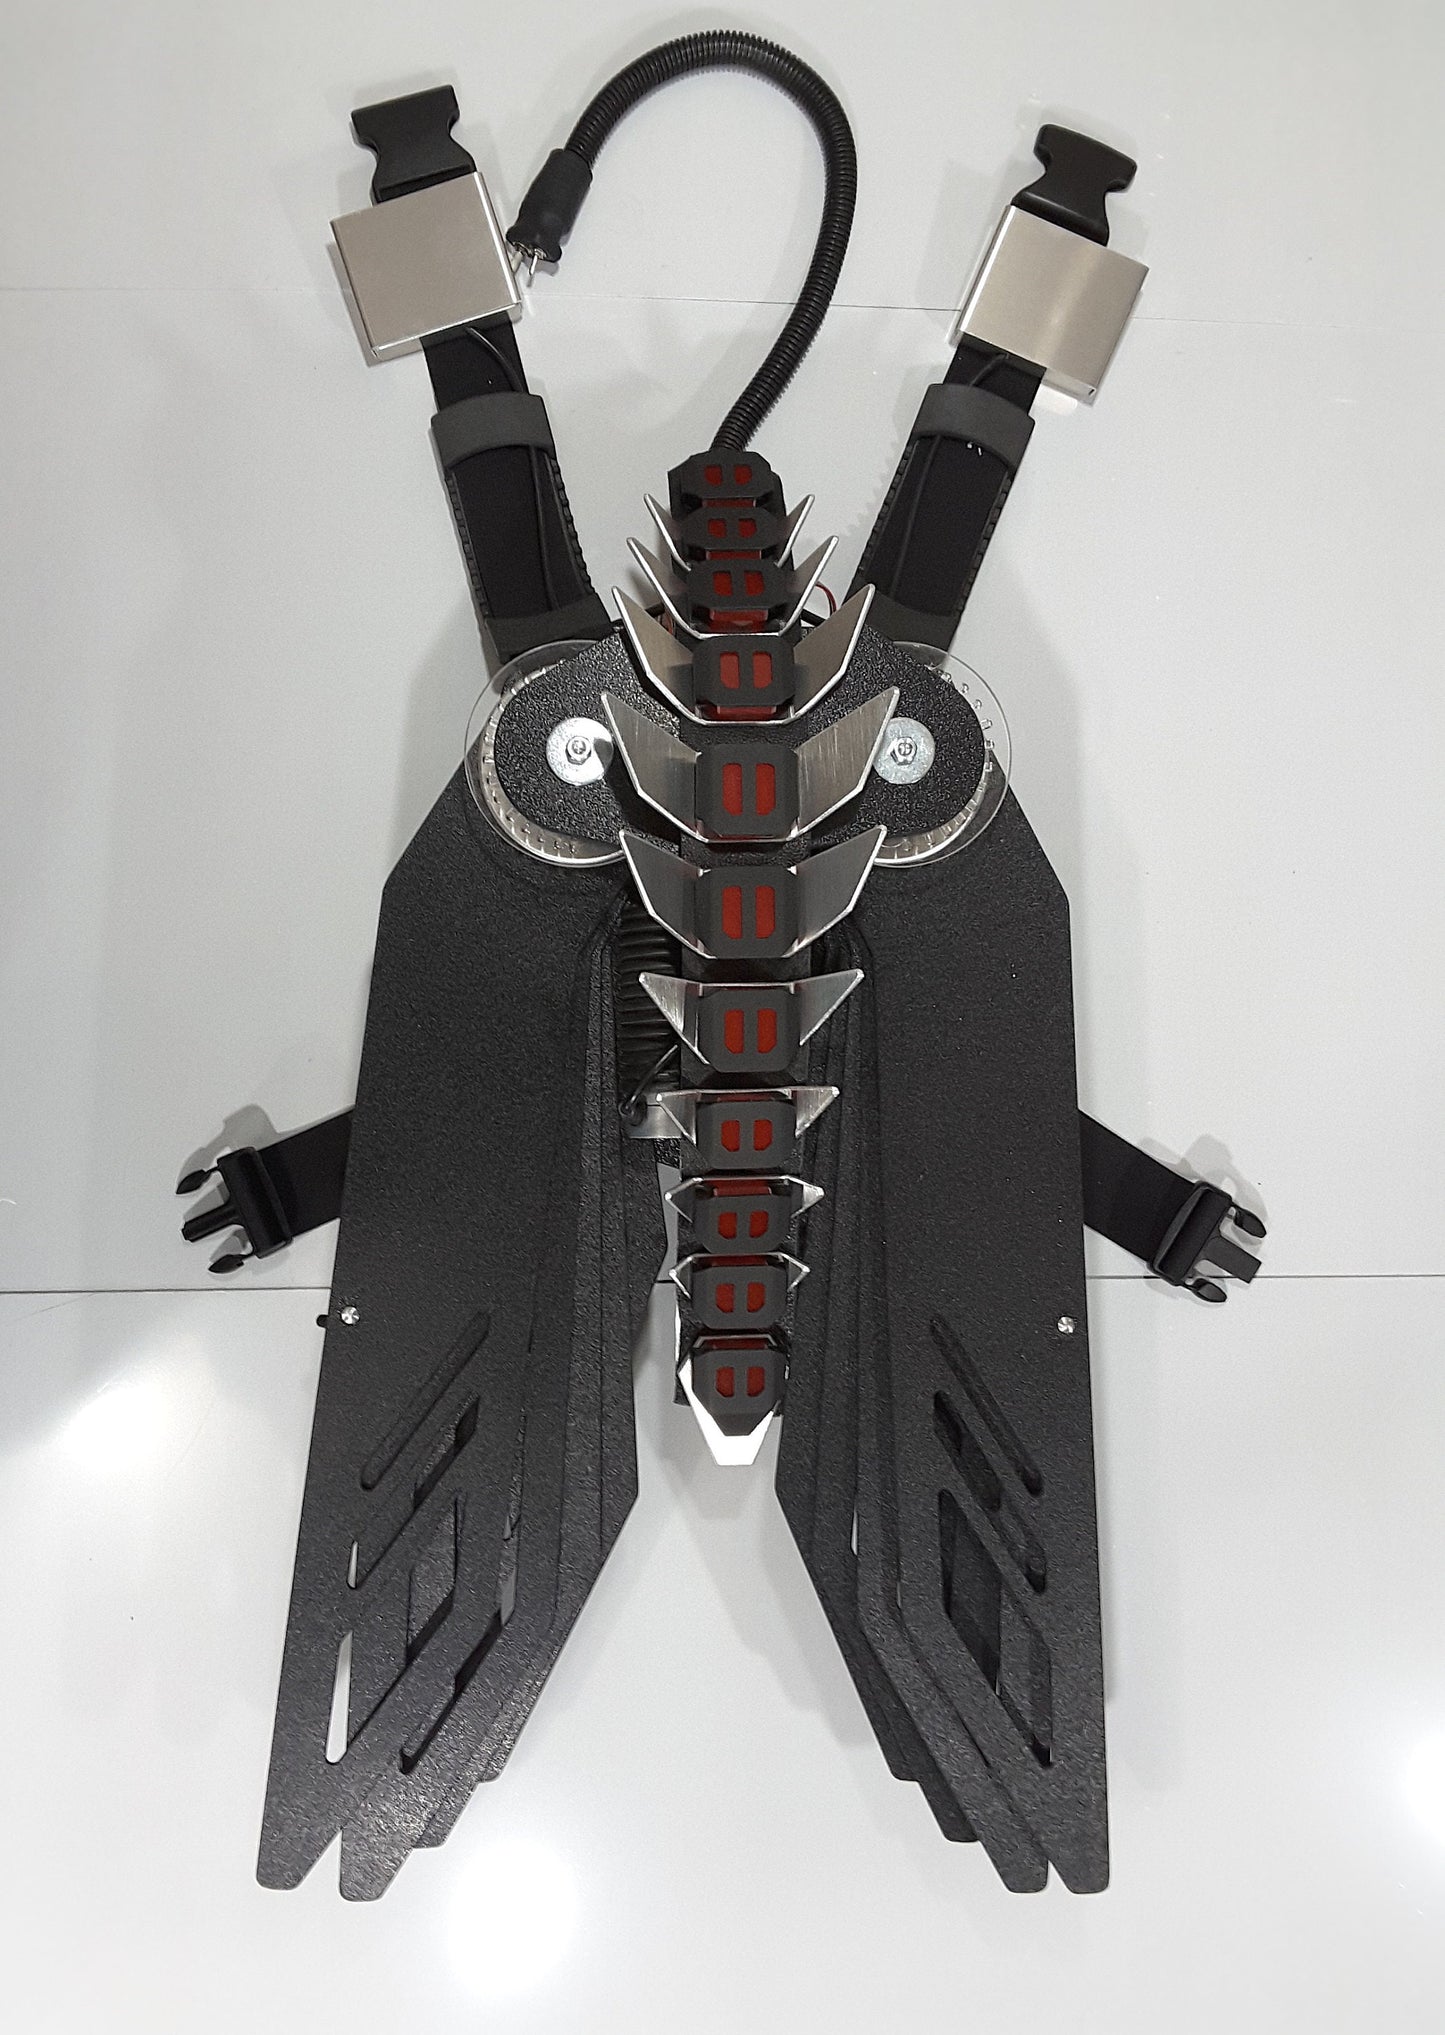 Hybrid Spine Wings